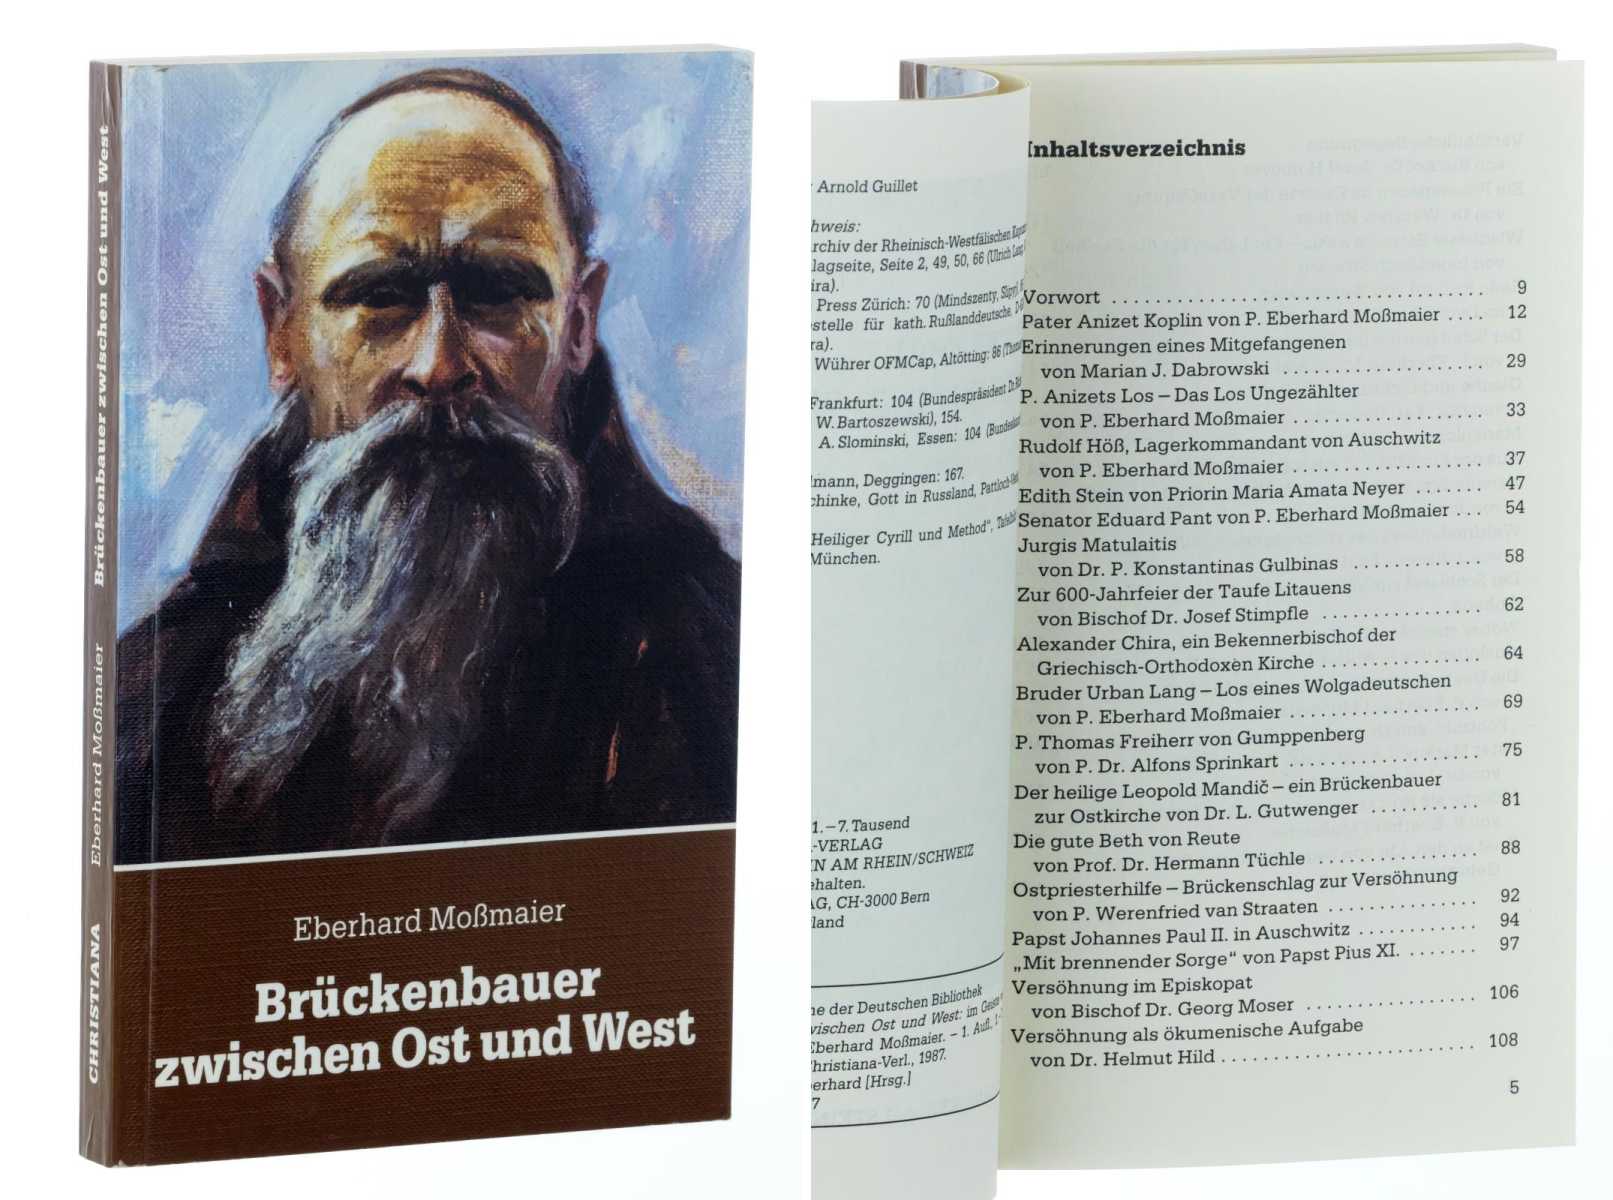 Moßmaier, Eberhard (Hg.):  Brückenbauer zwischen Ost und West, im Geiste von Pater Anizet Koplin. 